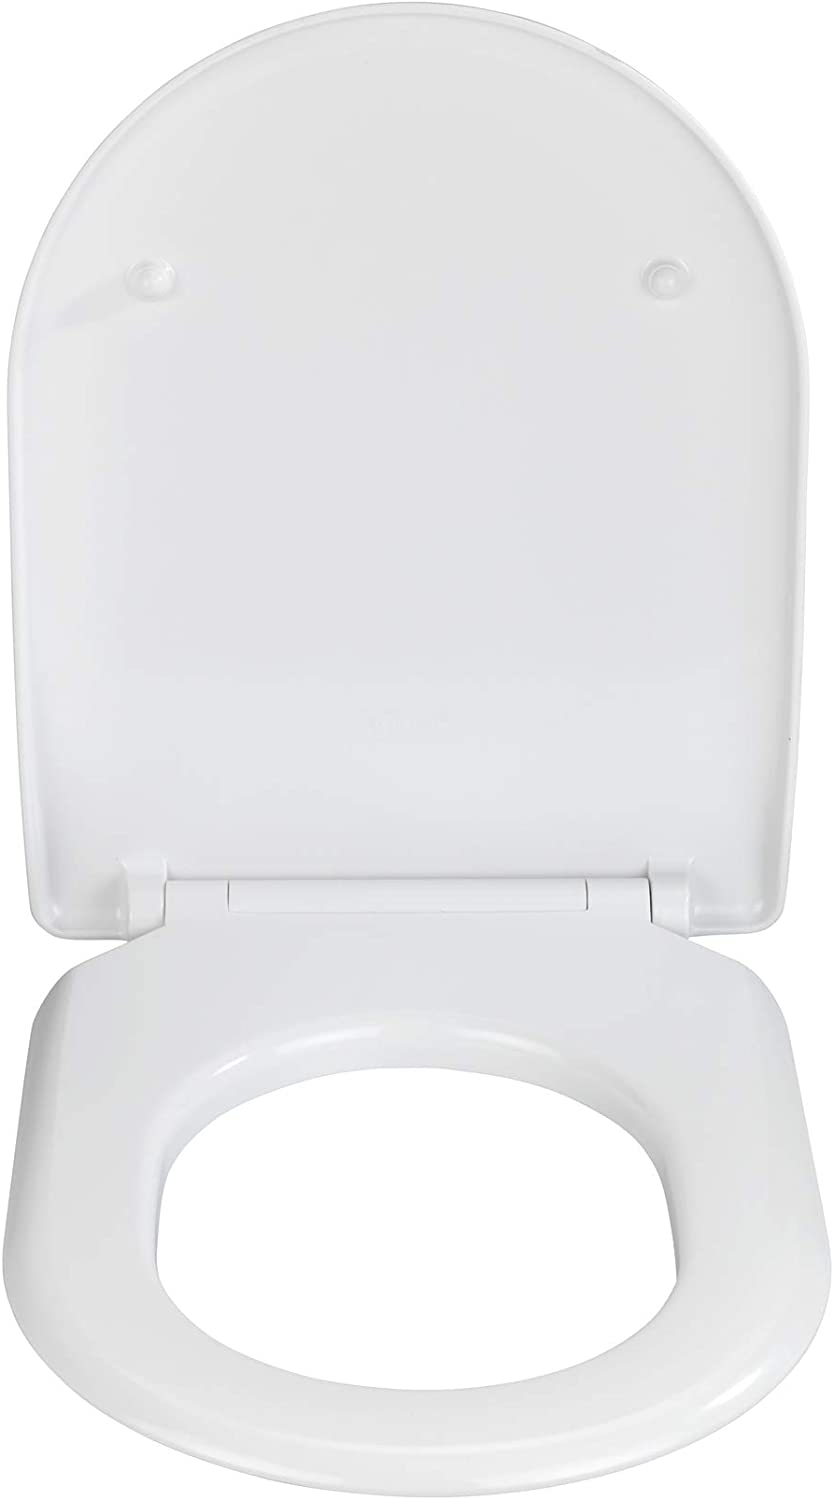 WC-Sitz Exclusive Nr. 5, Toilettensitz mit Absenkautomatik, passend für Villeroy & Boch Subway 2.0 Slim und handelsübliche Keramiken, WC-Deckel aus antibakteriellem Duroplast, 37 x 46 cm, Weiß